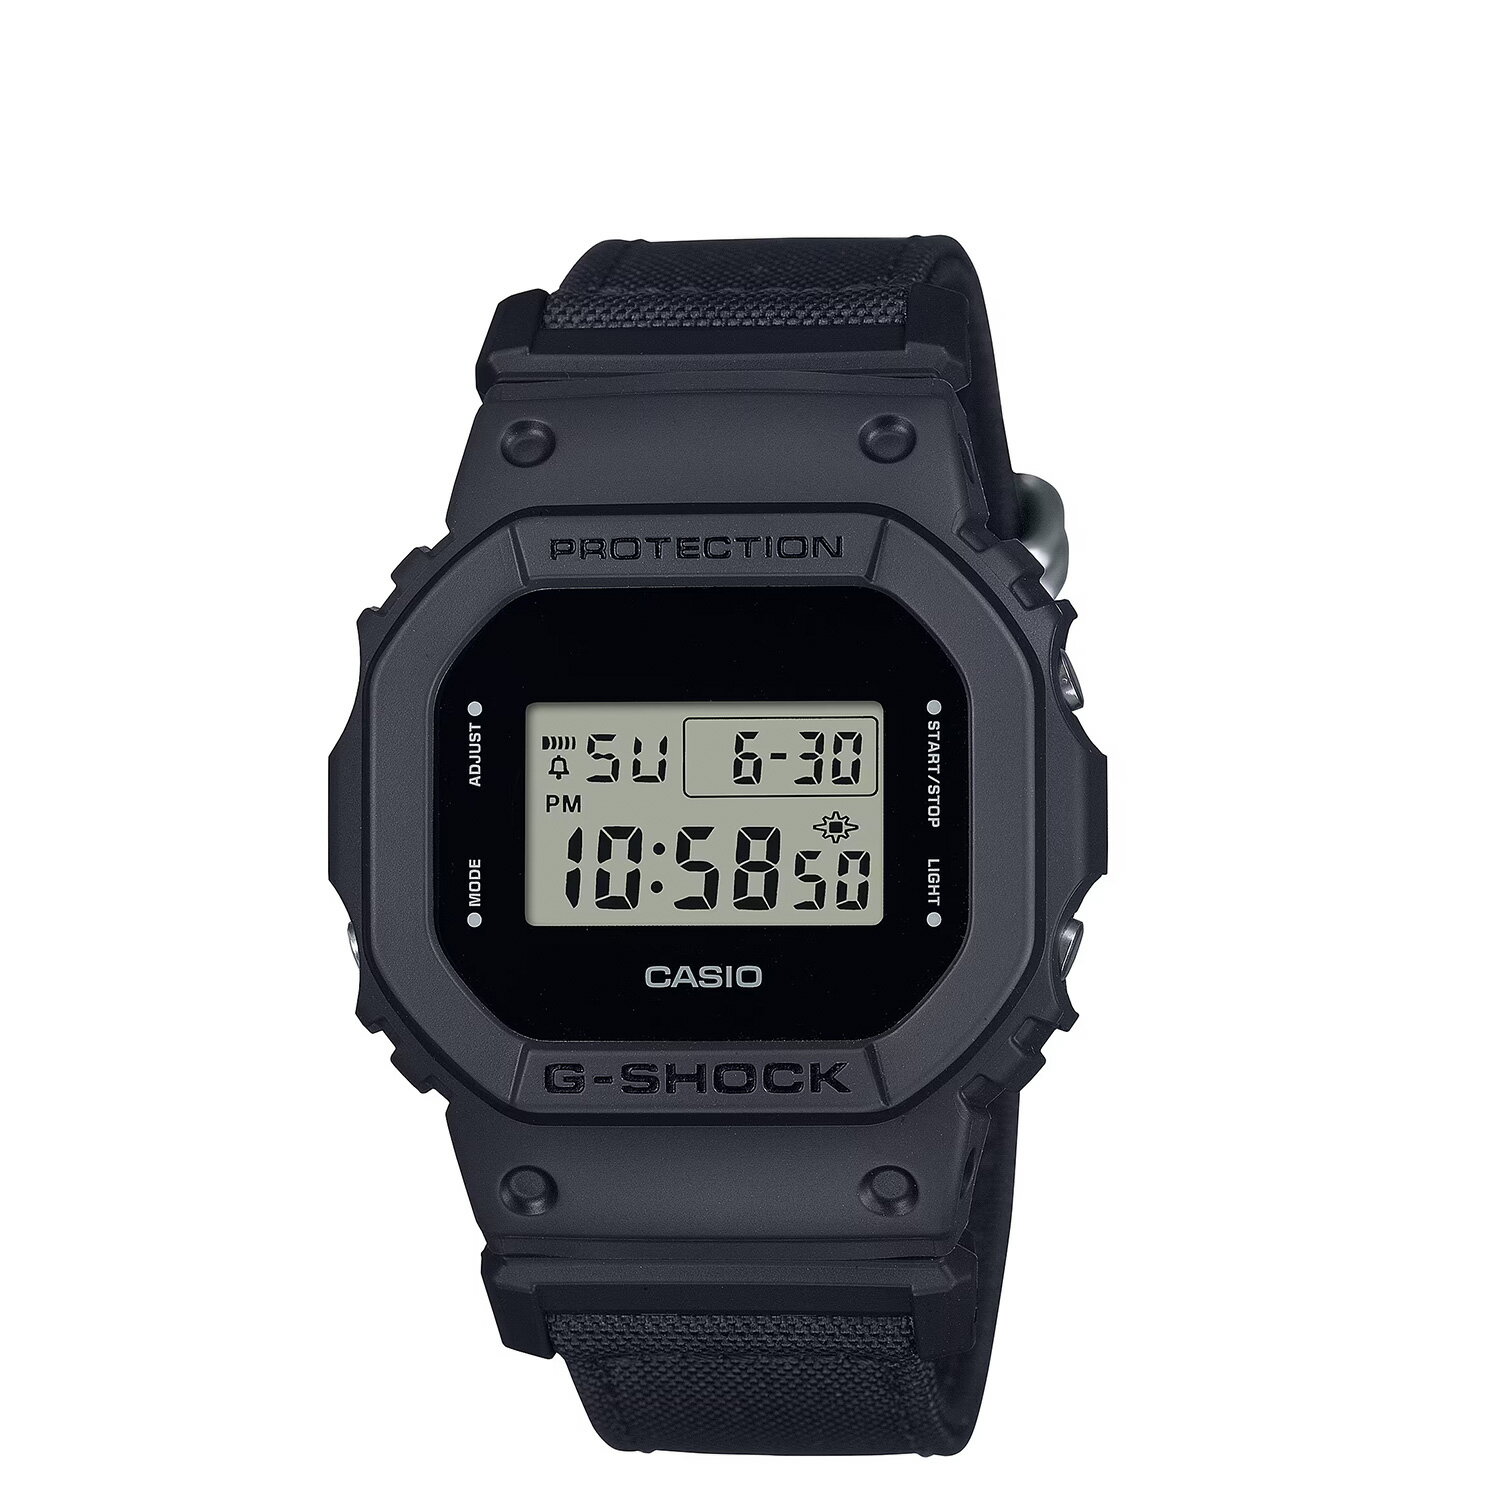 CASIO G-SHOCK 5600 SERIES カシオ 腕時計 DW-5600BCE-1JF ジーショック Gショック G-ショック メンズ レディース ブラック 黒